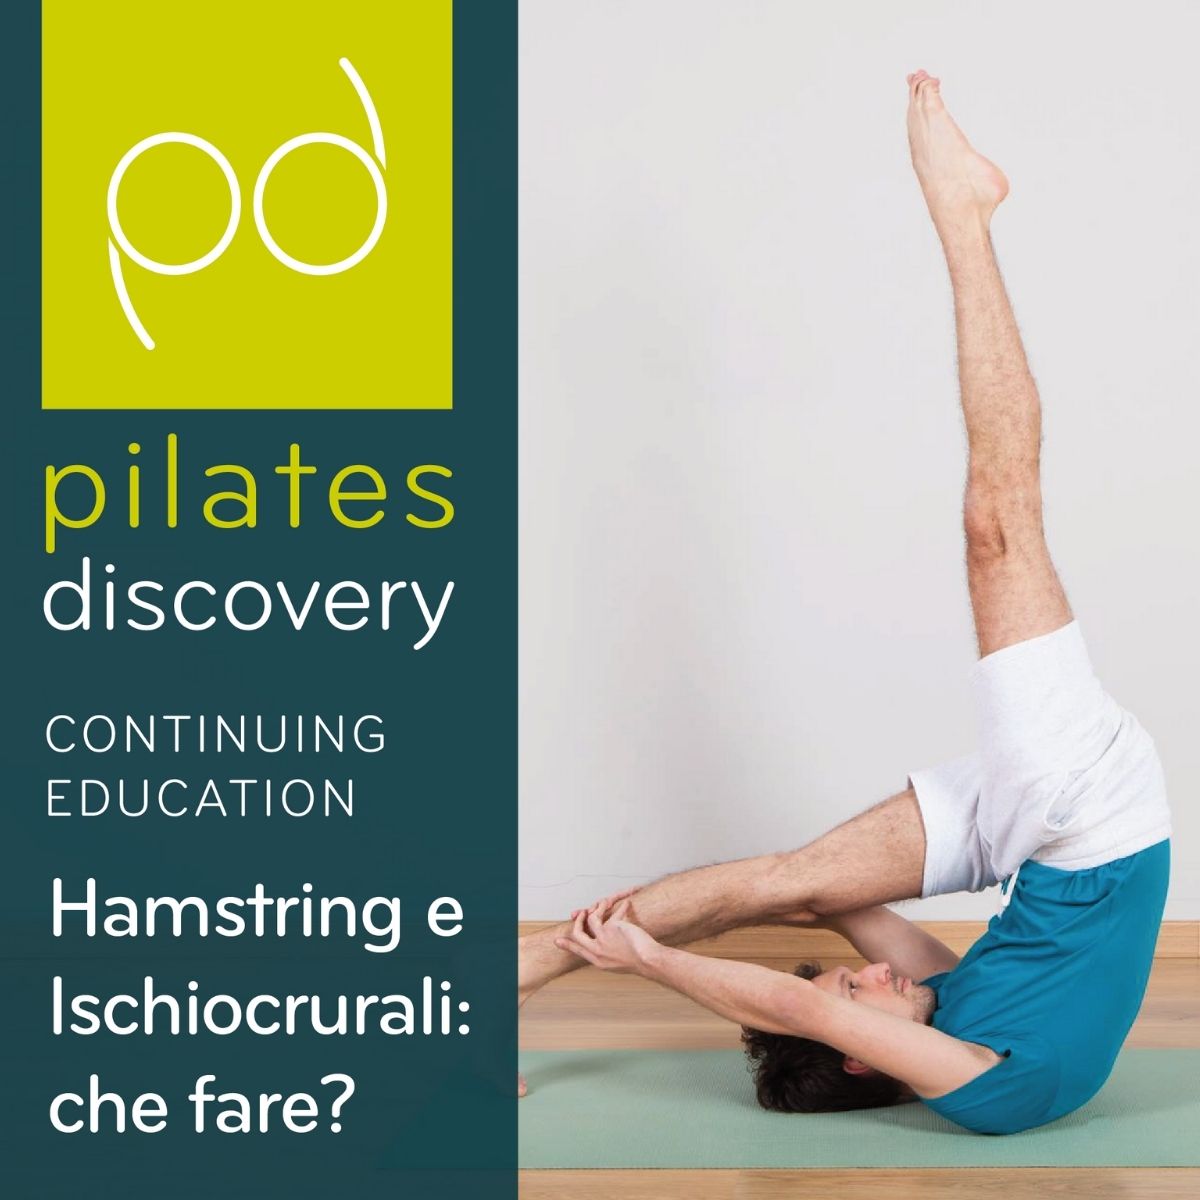 Hamstring e Ischiocrurali: che fare? di Pilates Discovery